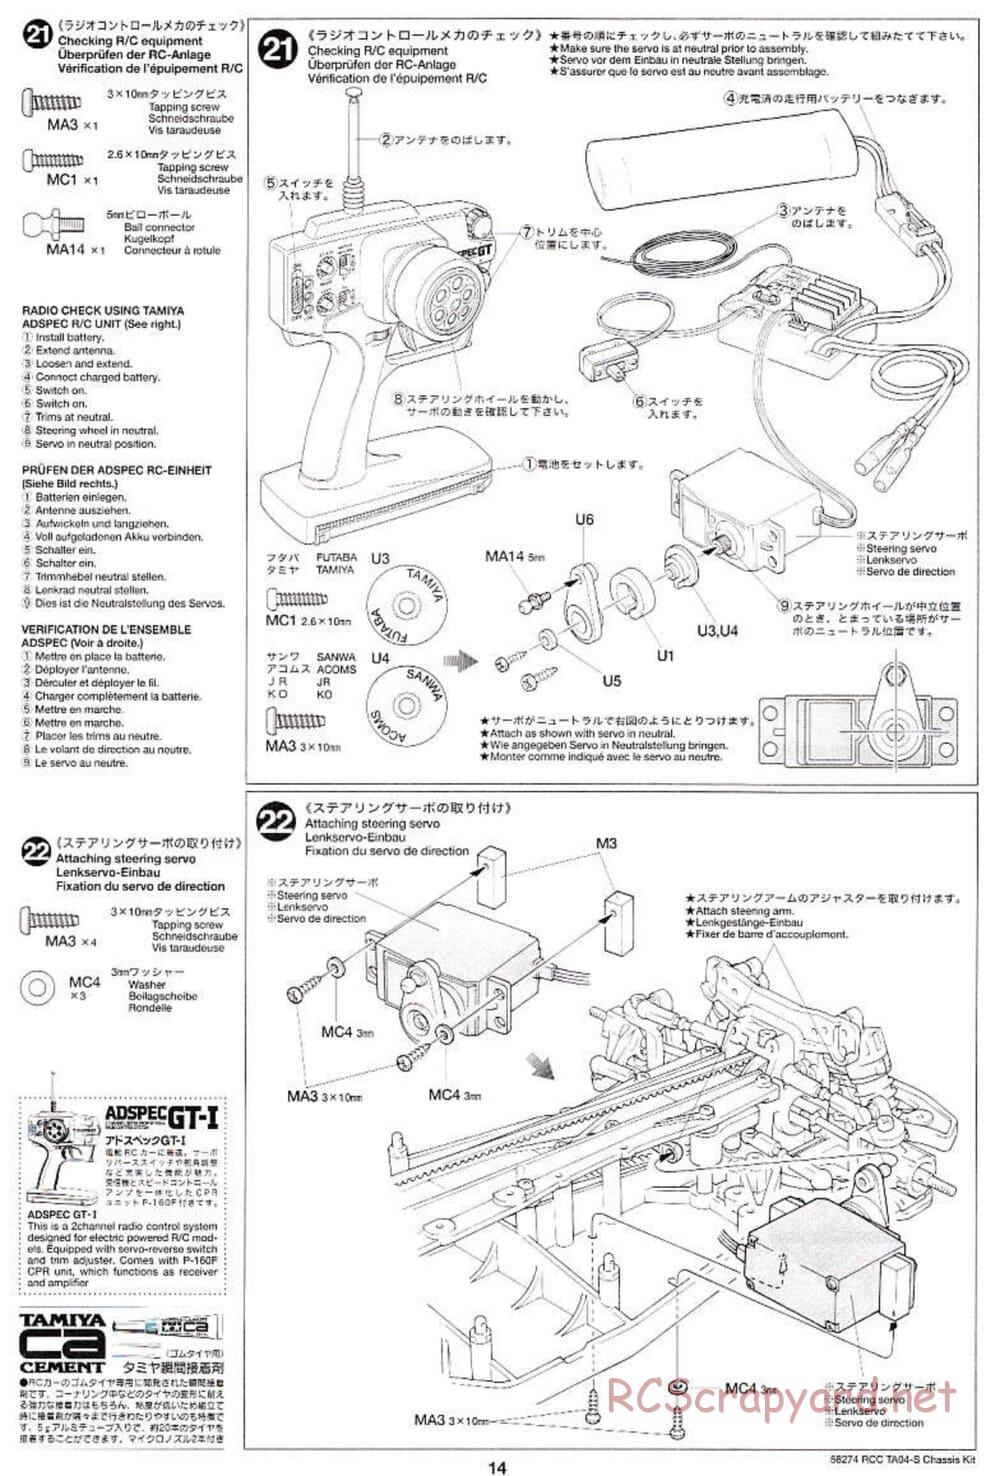 Tamiya - TA-04S Chassis - Manual - Page 14